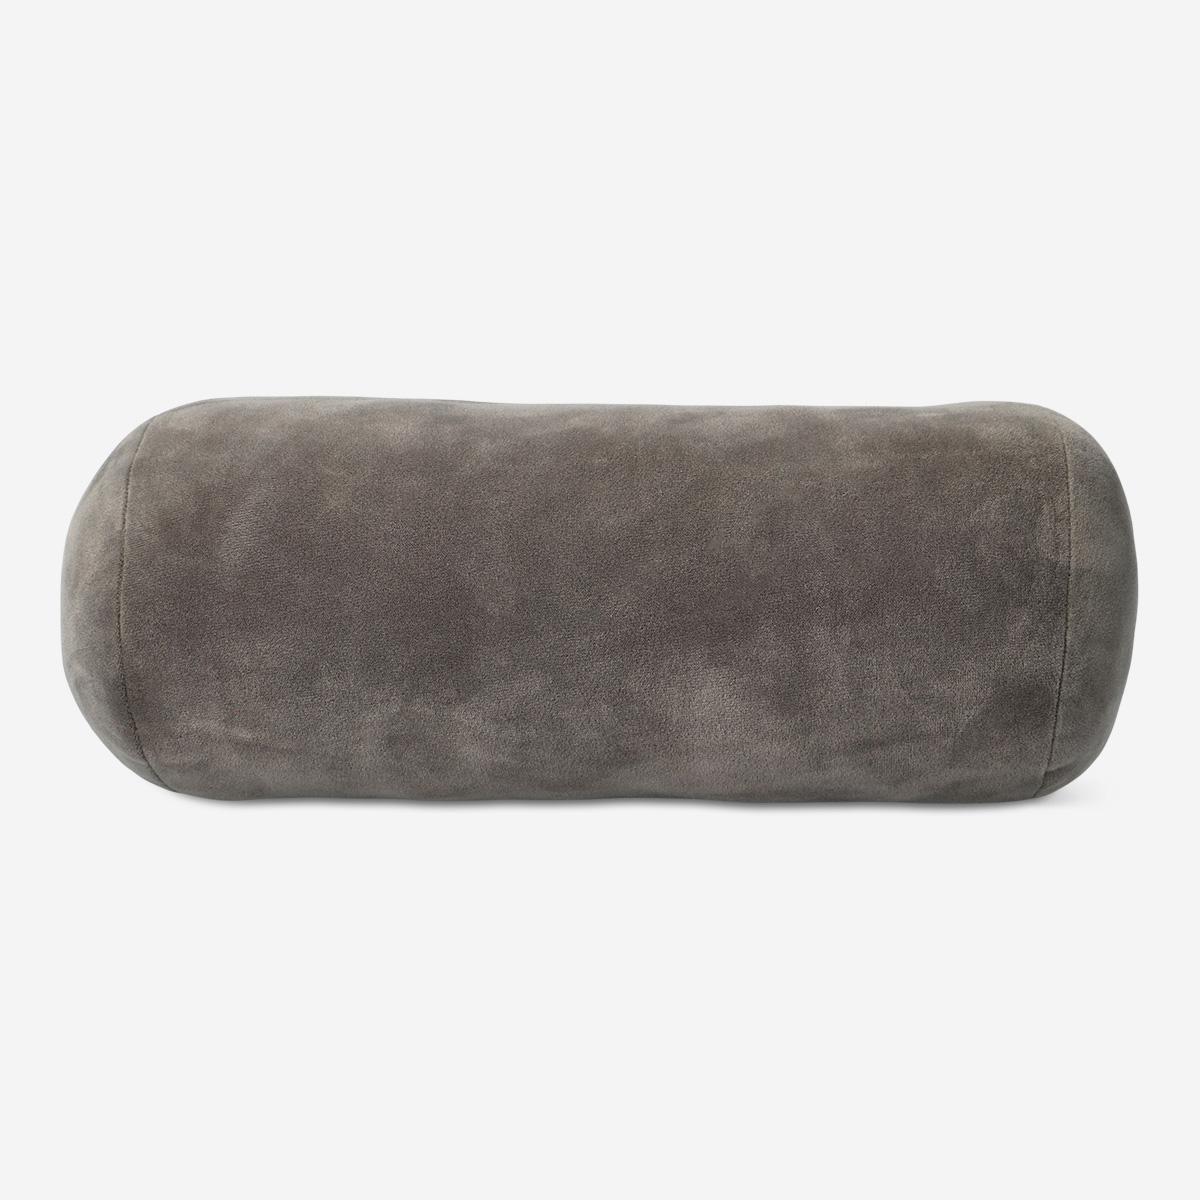 Grey cushion